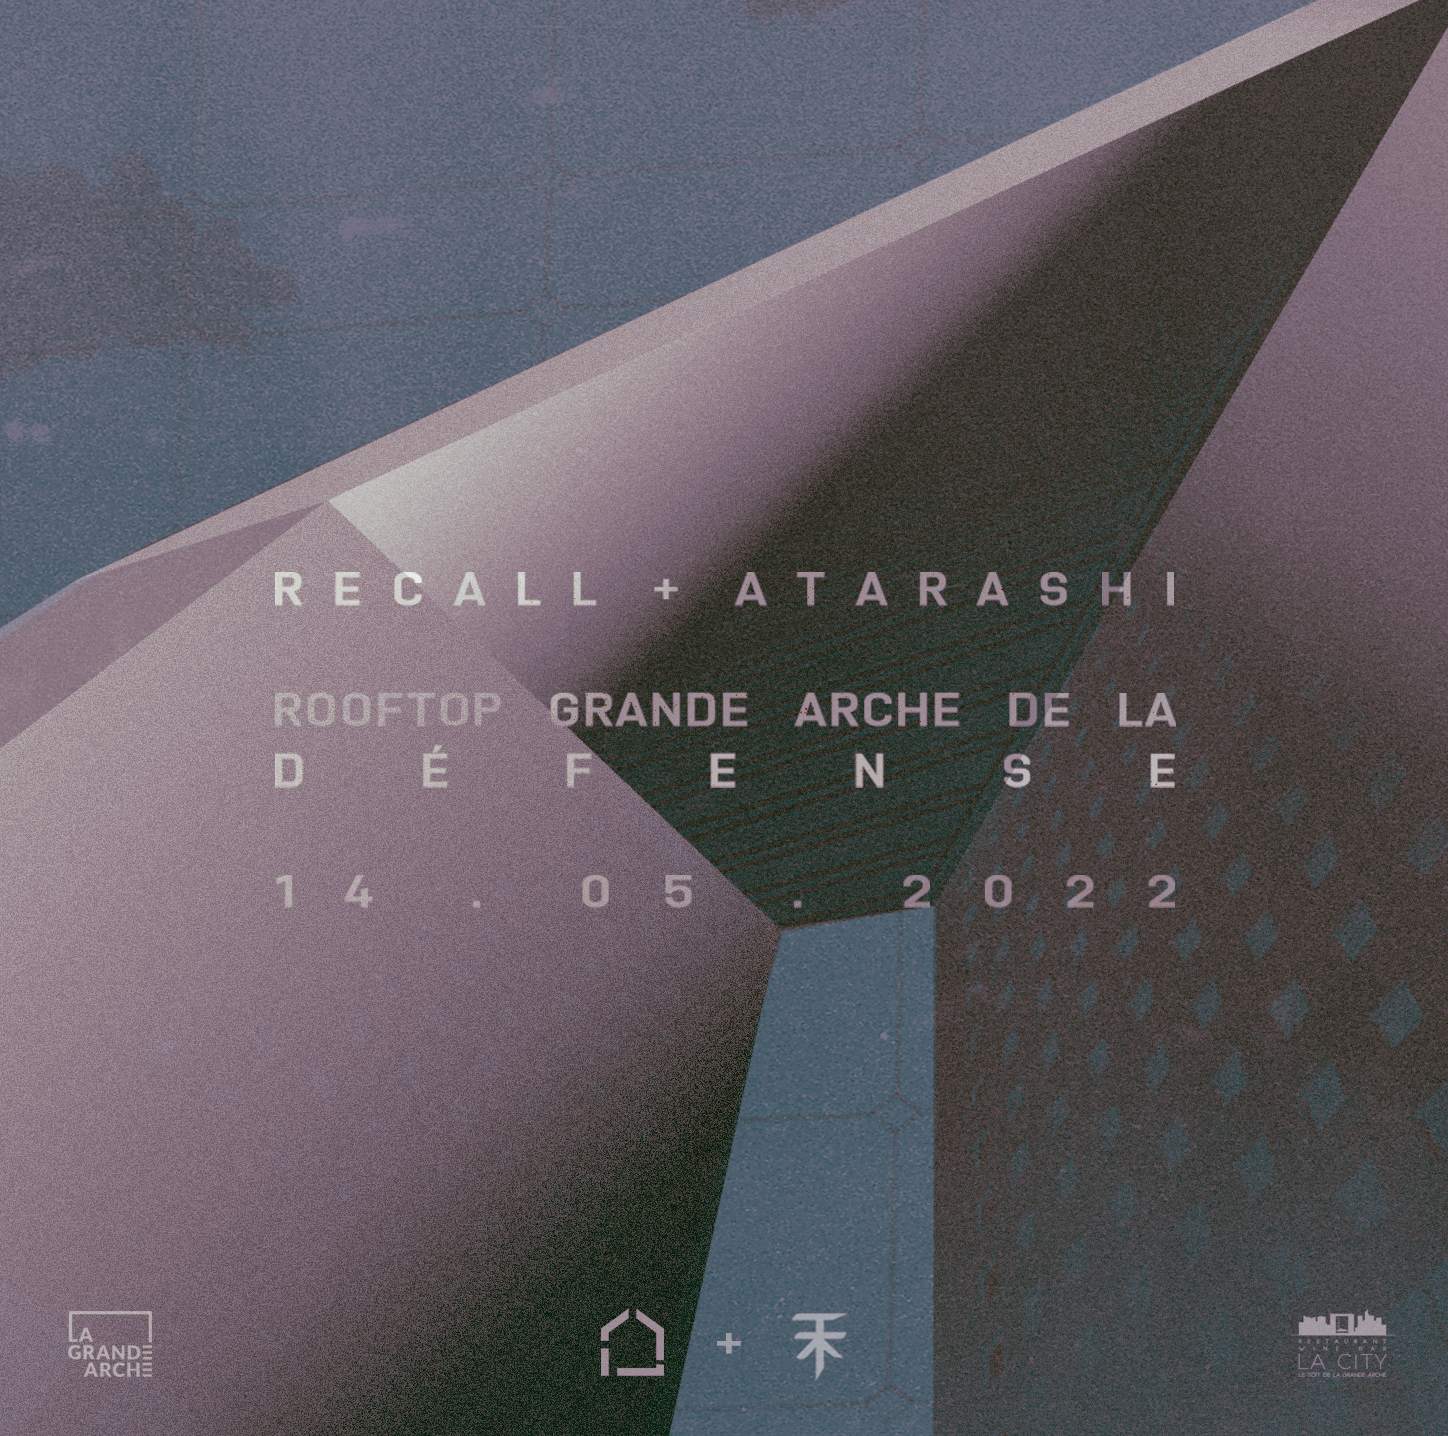 Recall + Atarashi at Rooftop Grande Arche de la Défense - フライヤー表